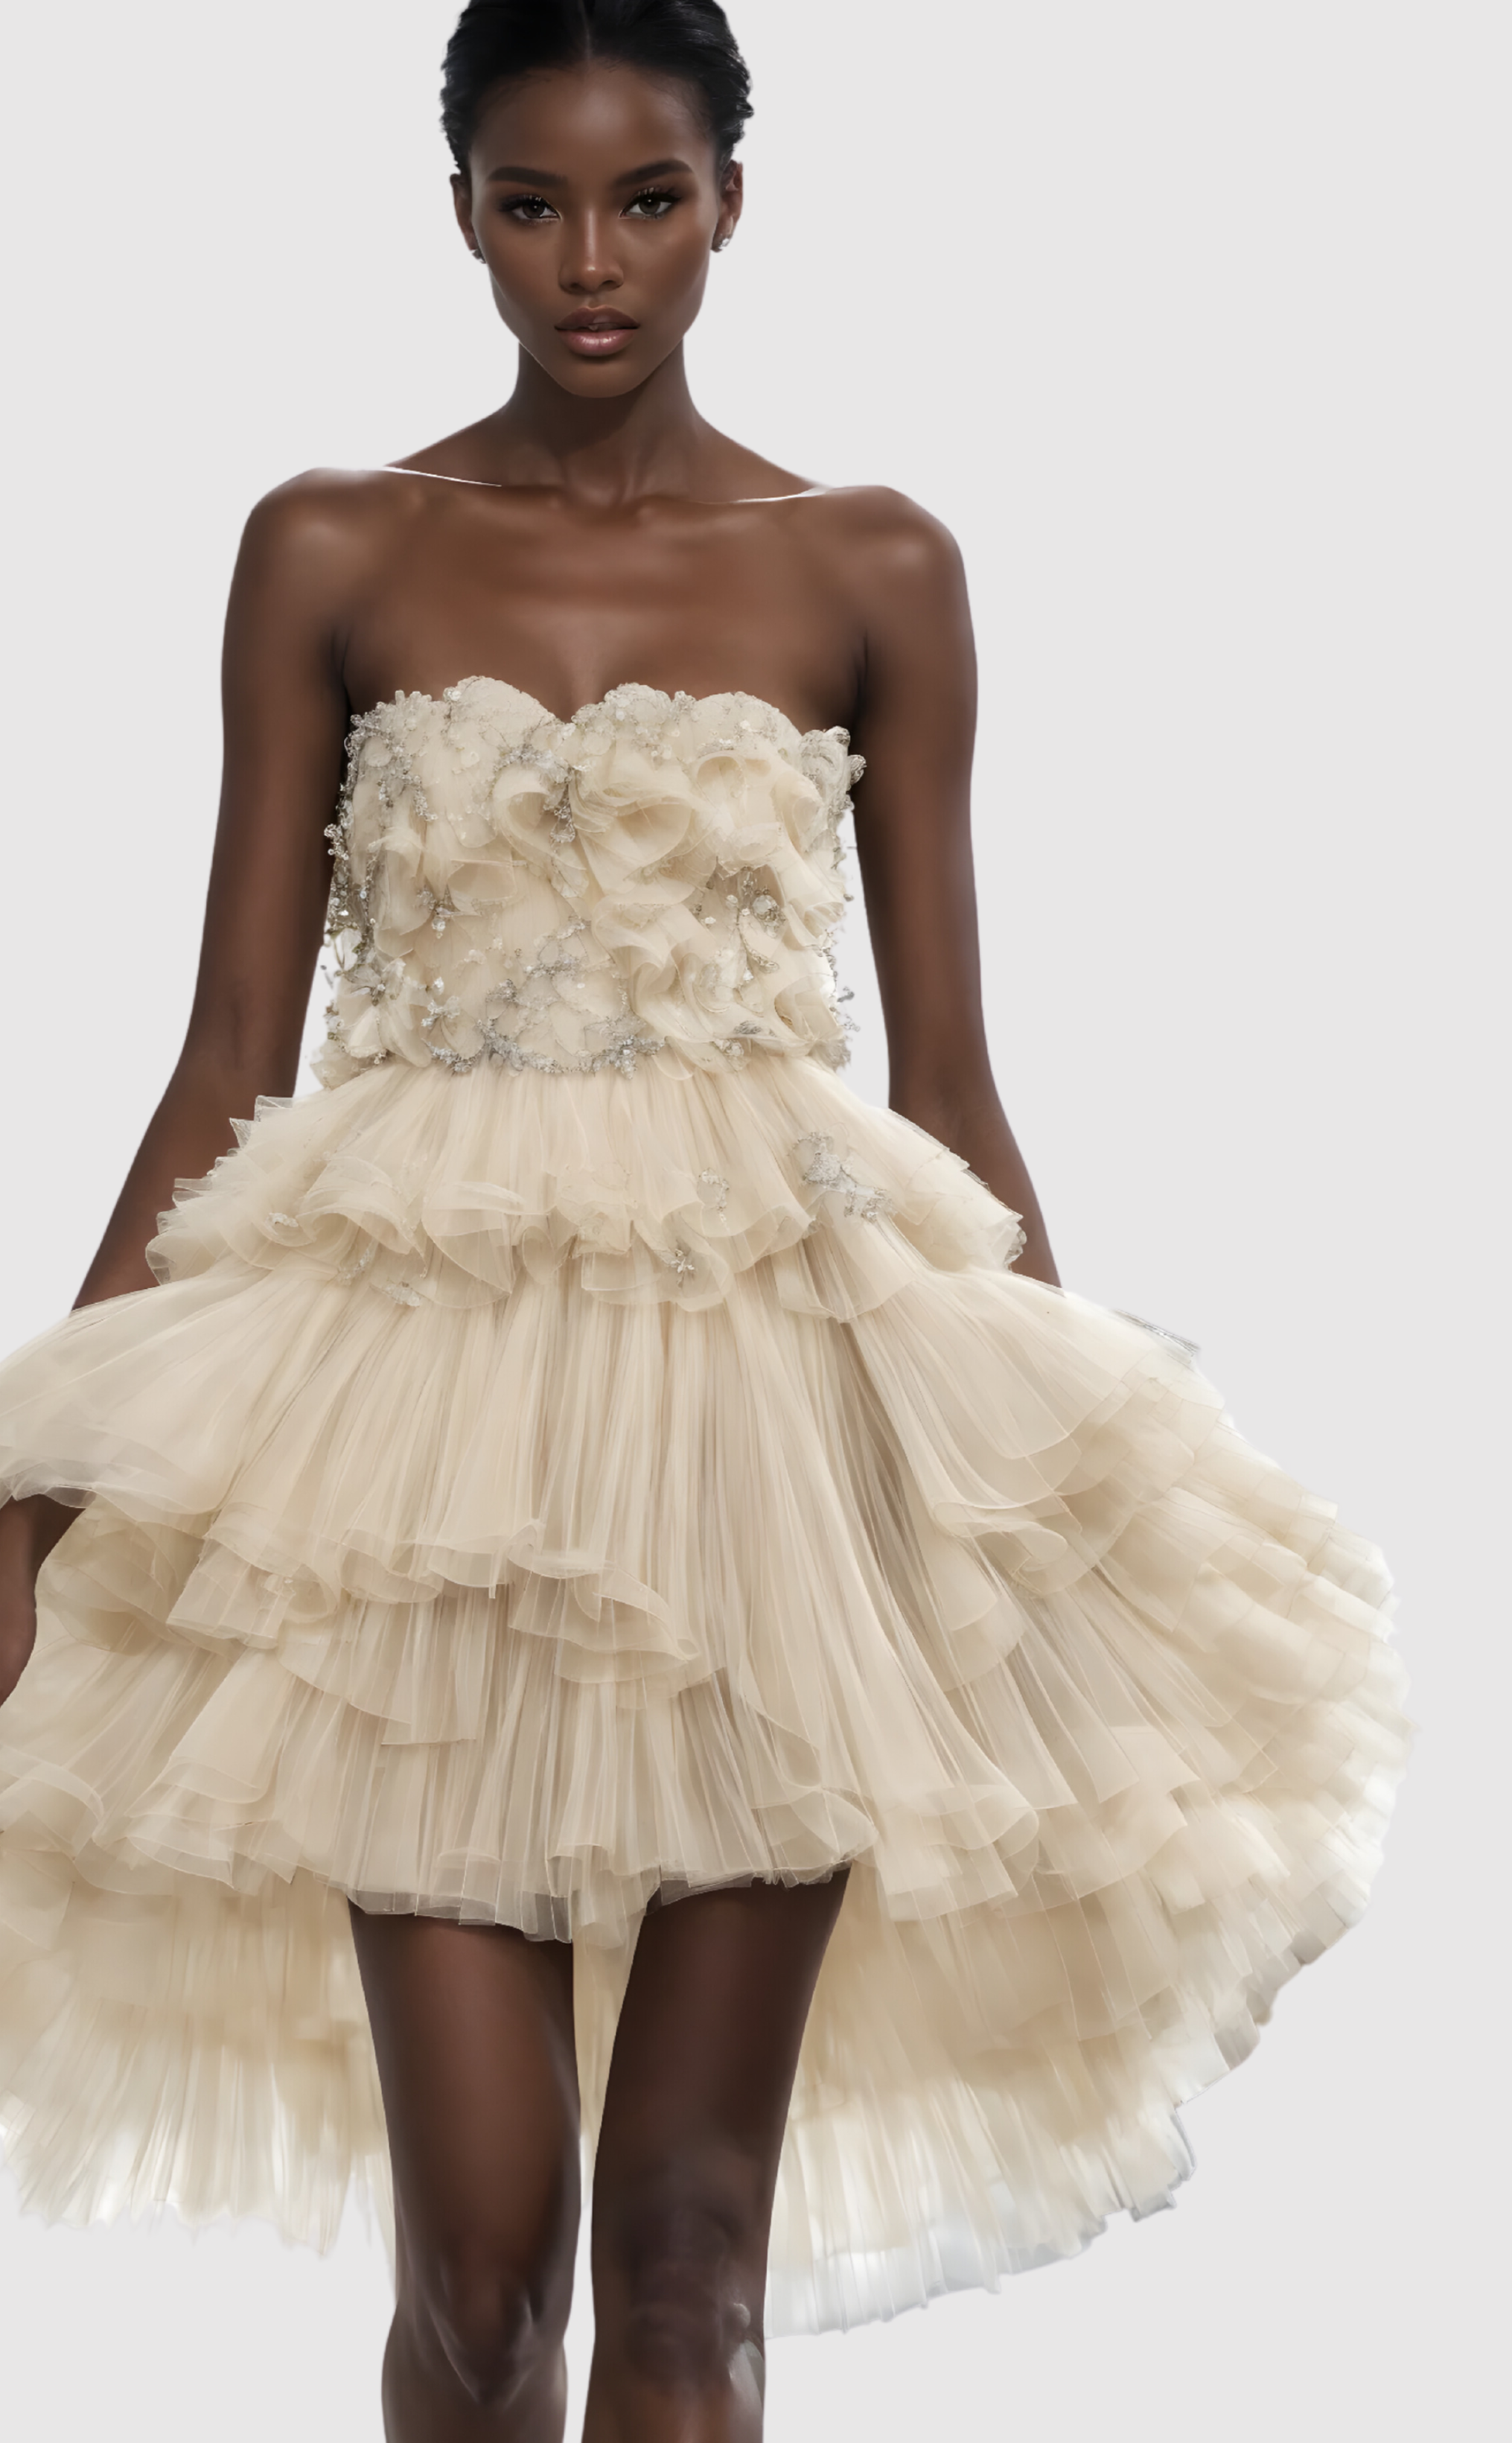 Ruffled bridal dress